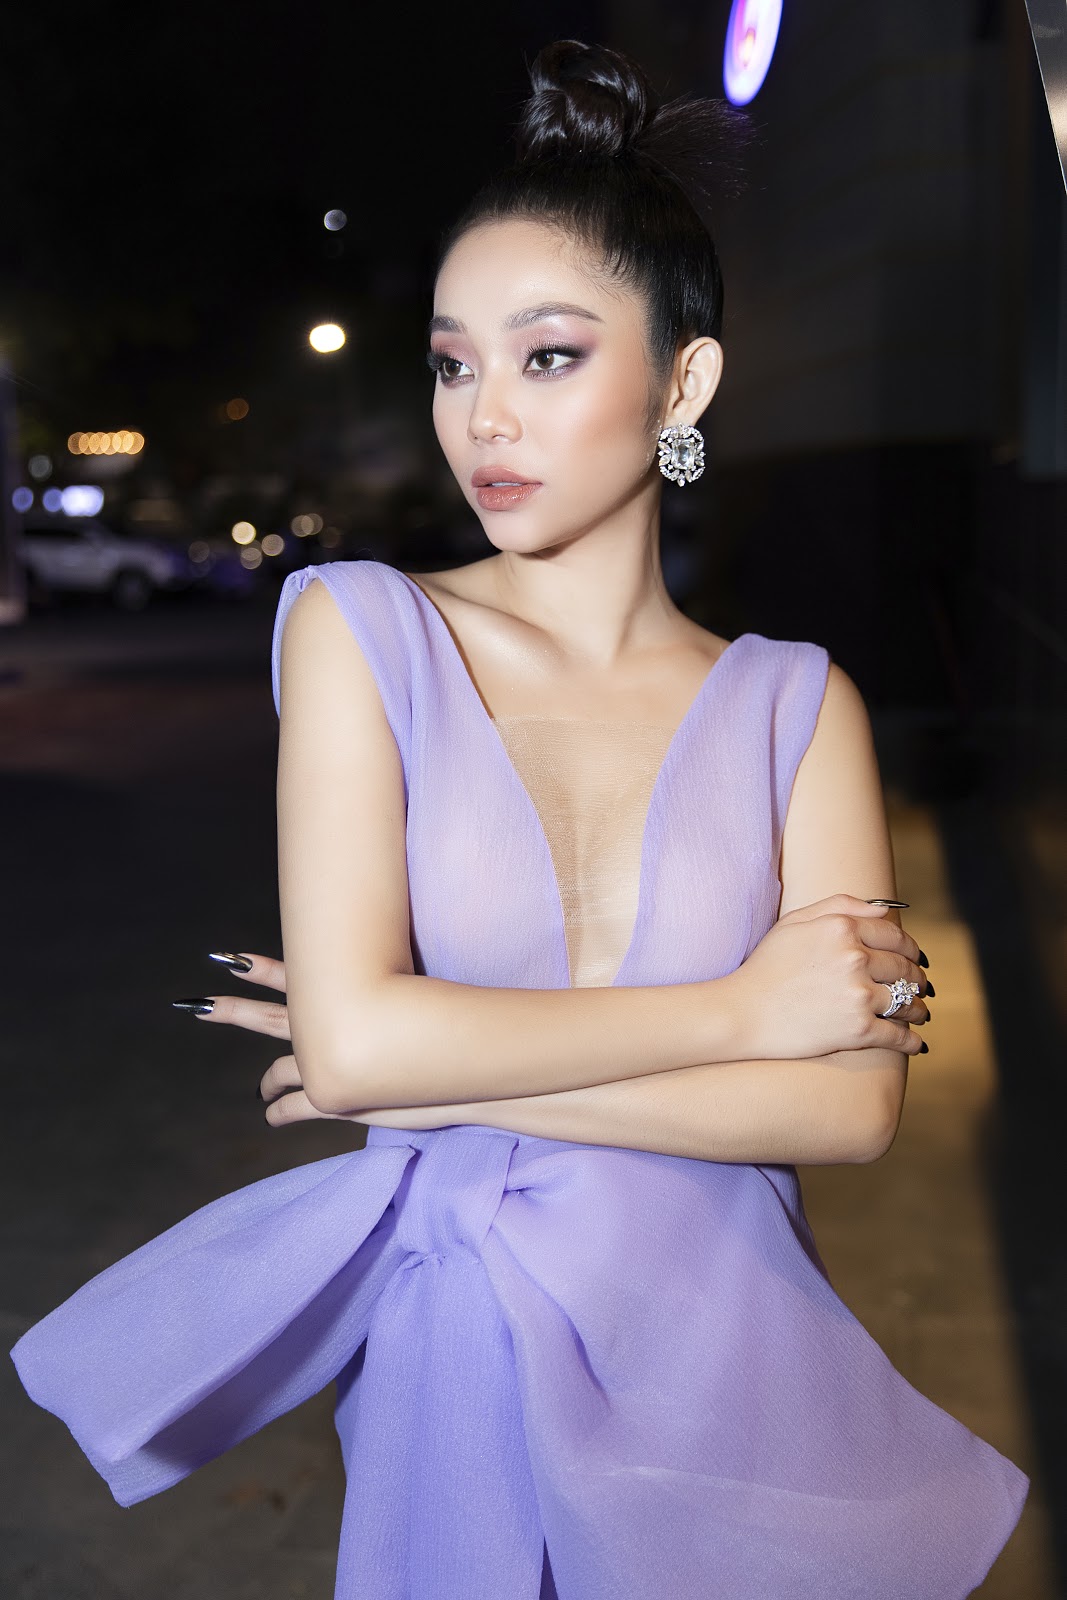 Lâm Thu Hồng diện váy tím sang chảnh, hút mắt khán giả tại Tuần lễ Thời trang Quốc tế Việt Nam 2020 - Hình 4